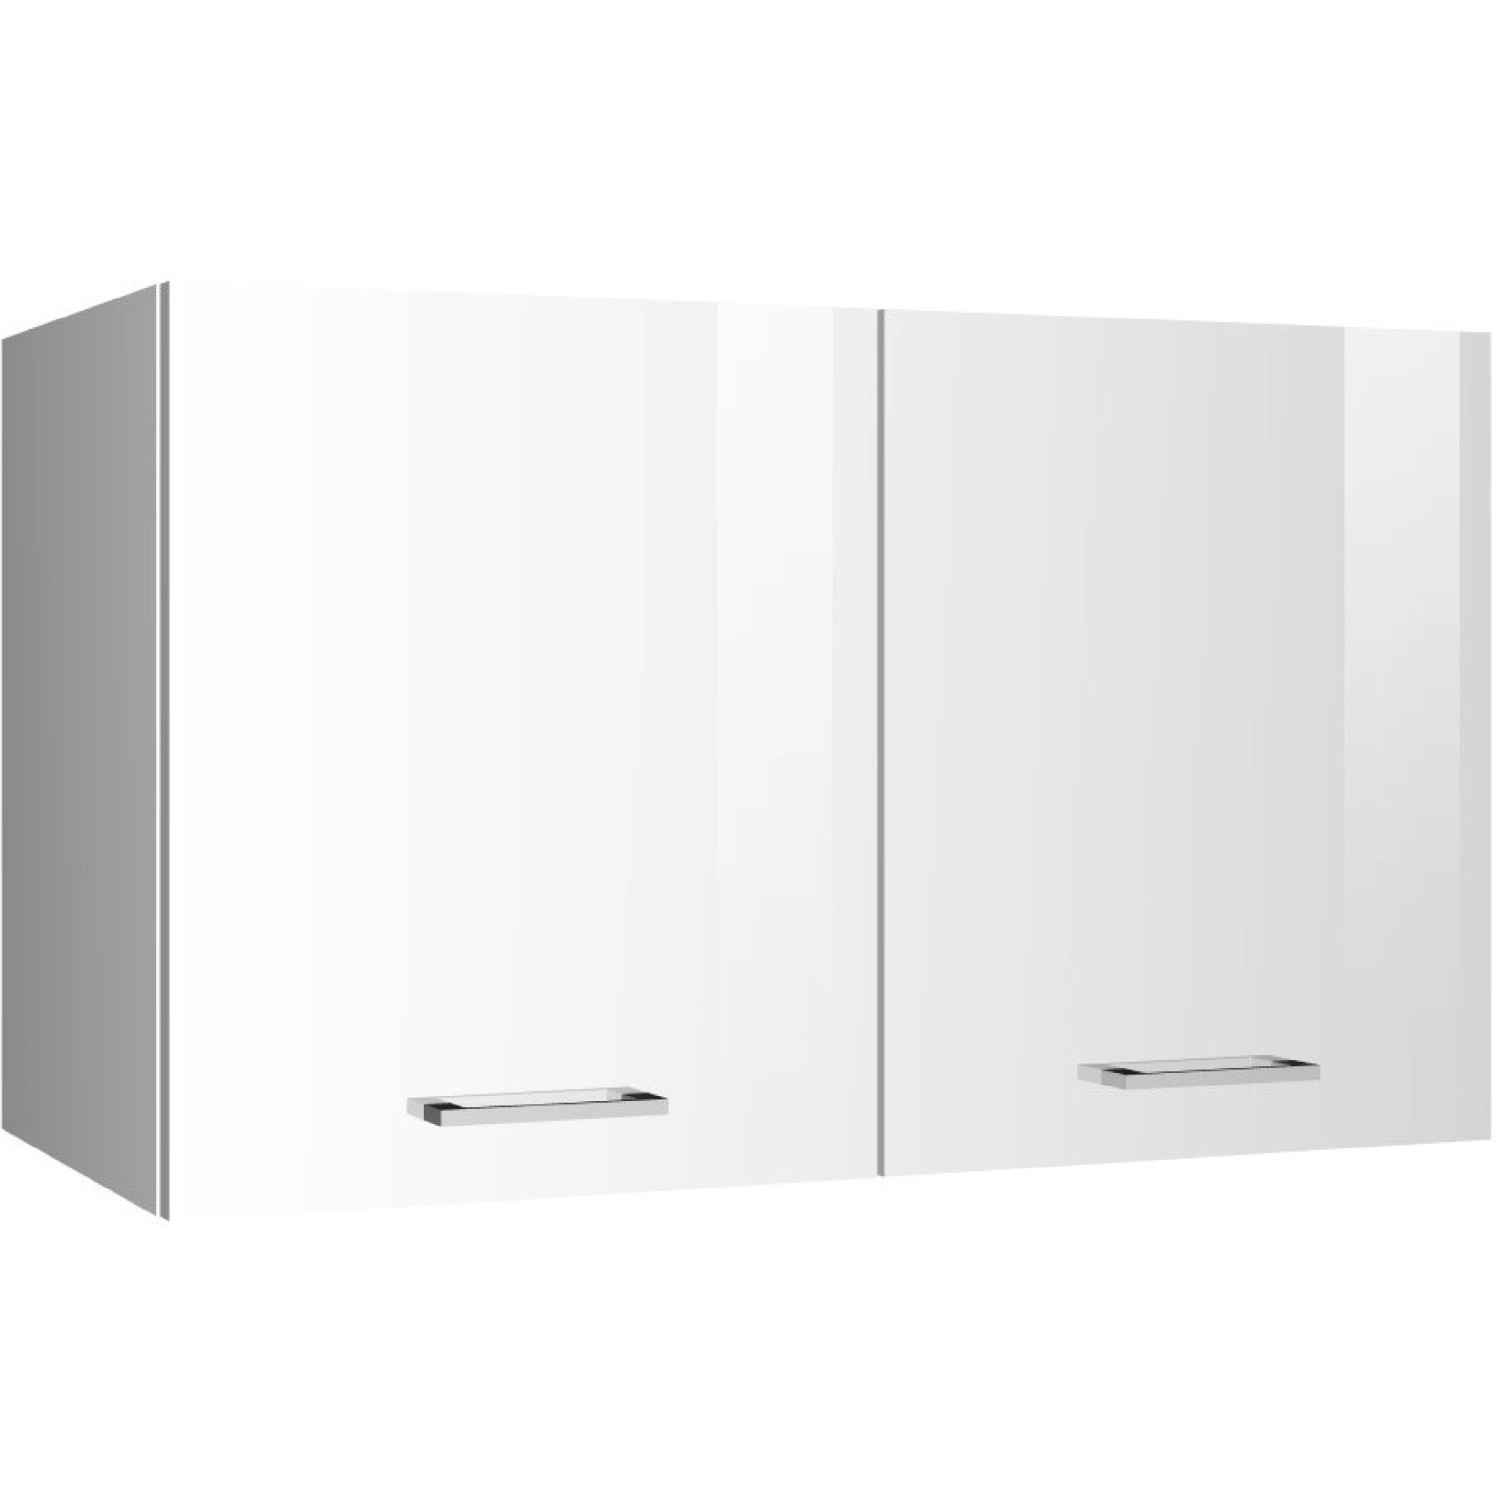 Held Möbel Küchen-Hängeschrank Mailand 100 cm Hochglanz Weiß/Weiß kaufen  bei OBI